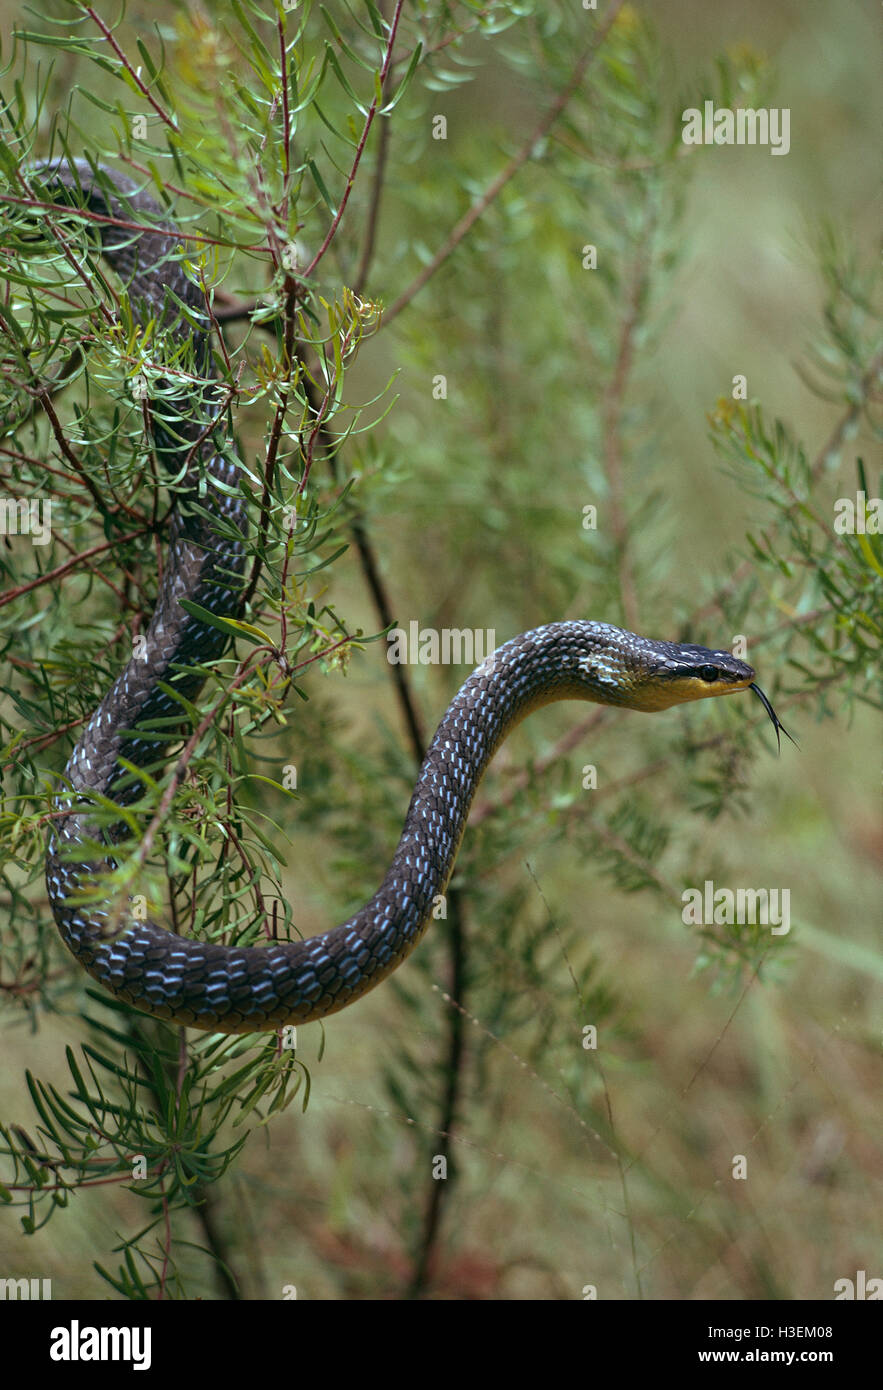 Green tree snake (dendrelaphis punctulata), en el que Bush con lengüeta bifurcada extendido al norte de Queensland, Australia. Foto de stock